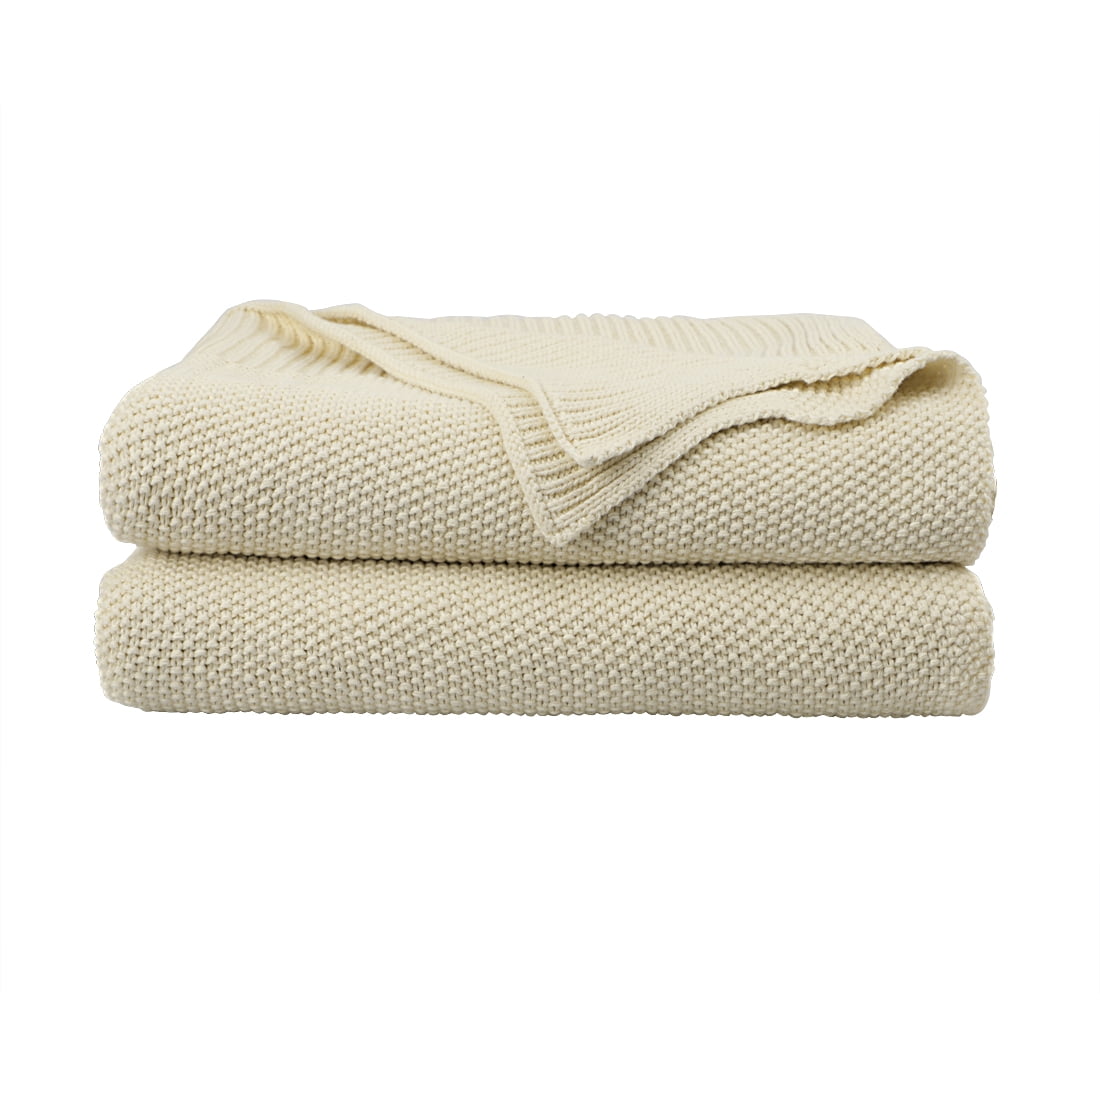 PICCOCASA Couverture Plaid Lit pour Canapé en Tricot 100% Coton Légère Solide Douce Beige 130x180cm 